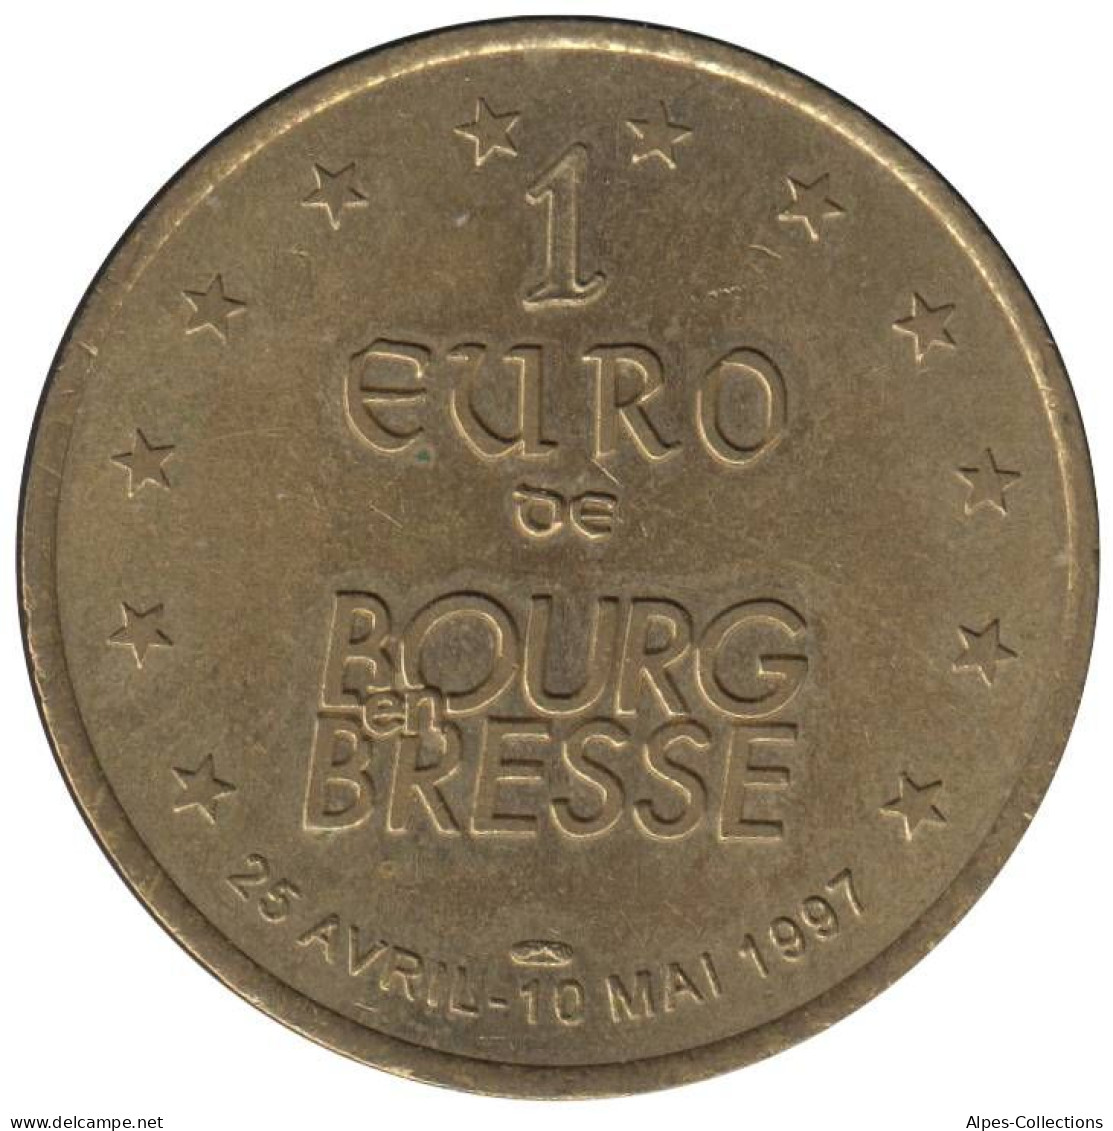 BOURG EN BRESSE - EU0010.6 - 1 EURO DES VILLES - Réf: T266 - 1997 - Euro Delle Città